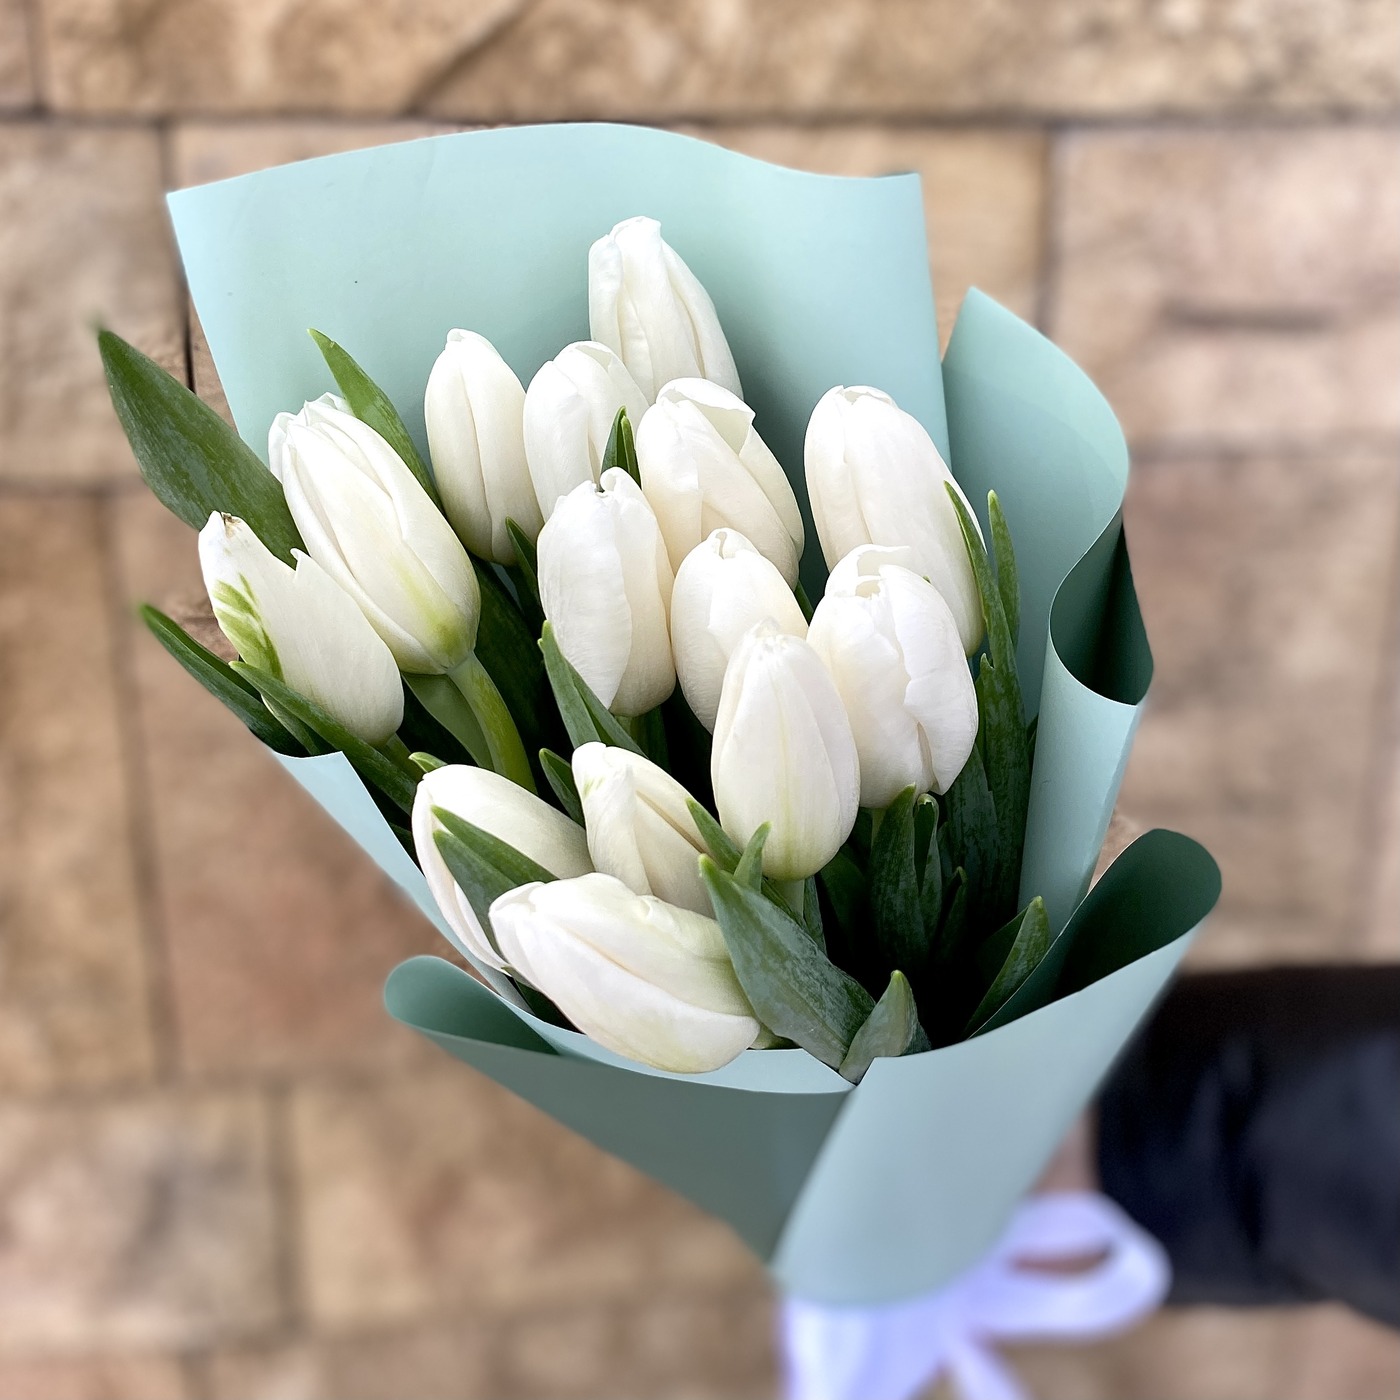 Тюльпан купить в москве с доставкой заказать цветы москва дешево